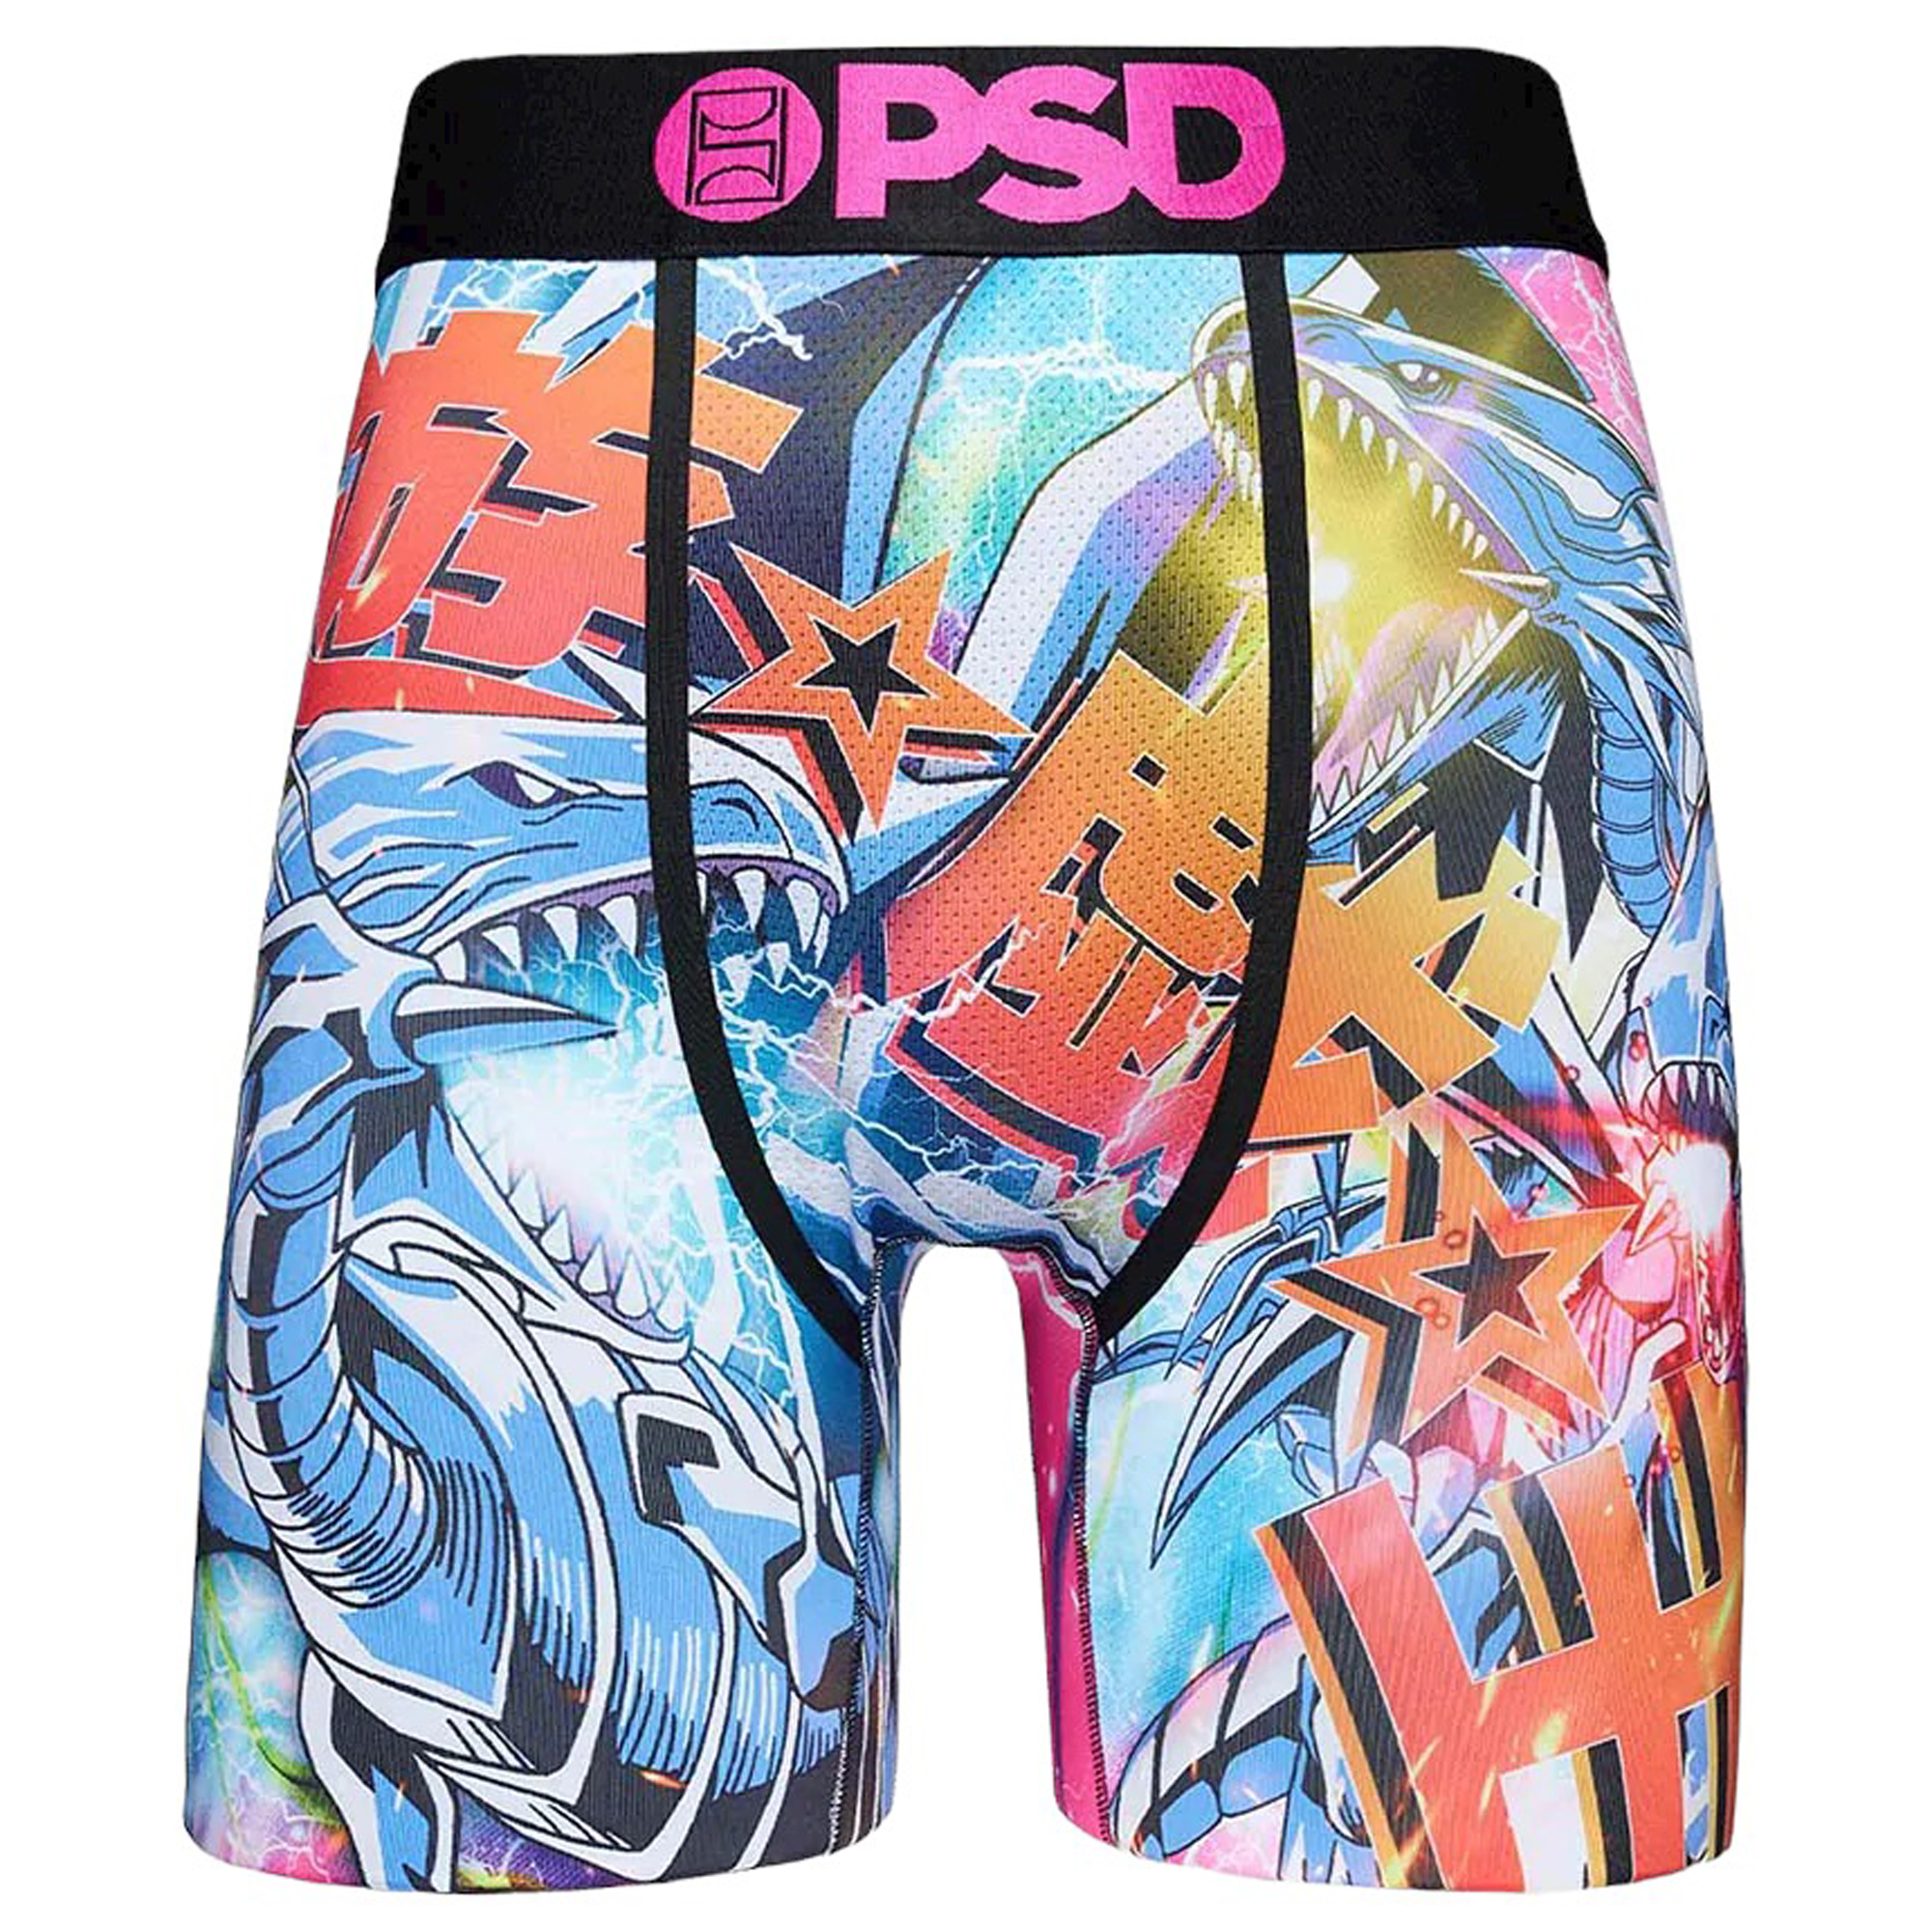 PSD Underwear, The Best Underwear! Who copped my PSD Underwear